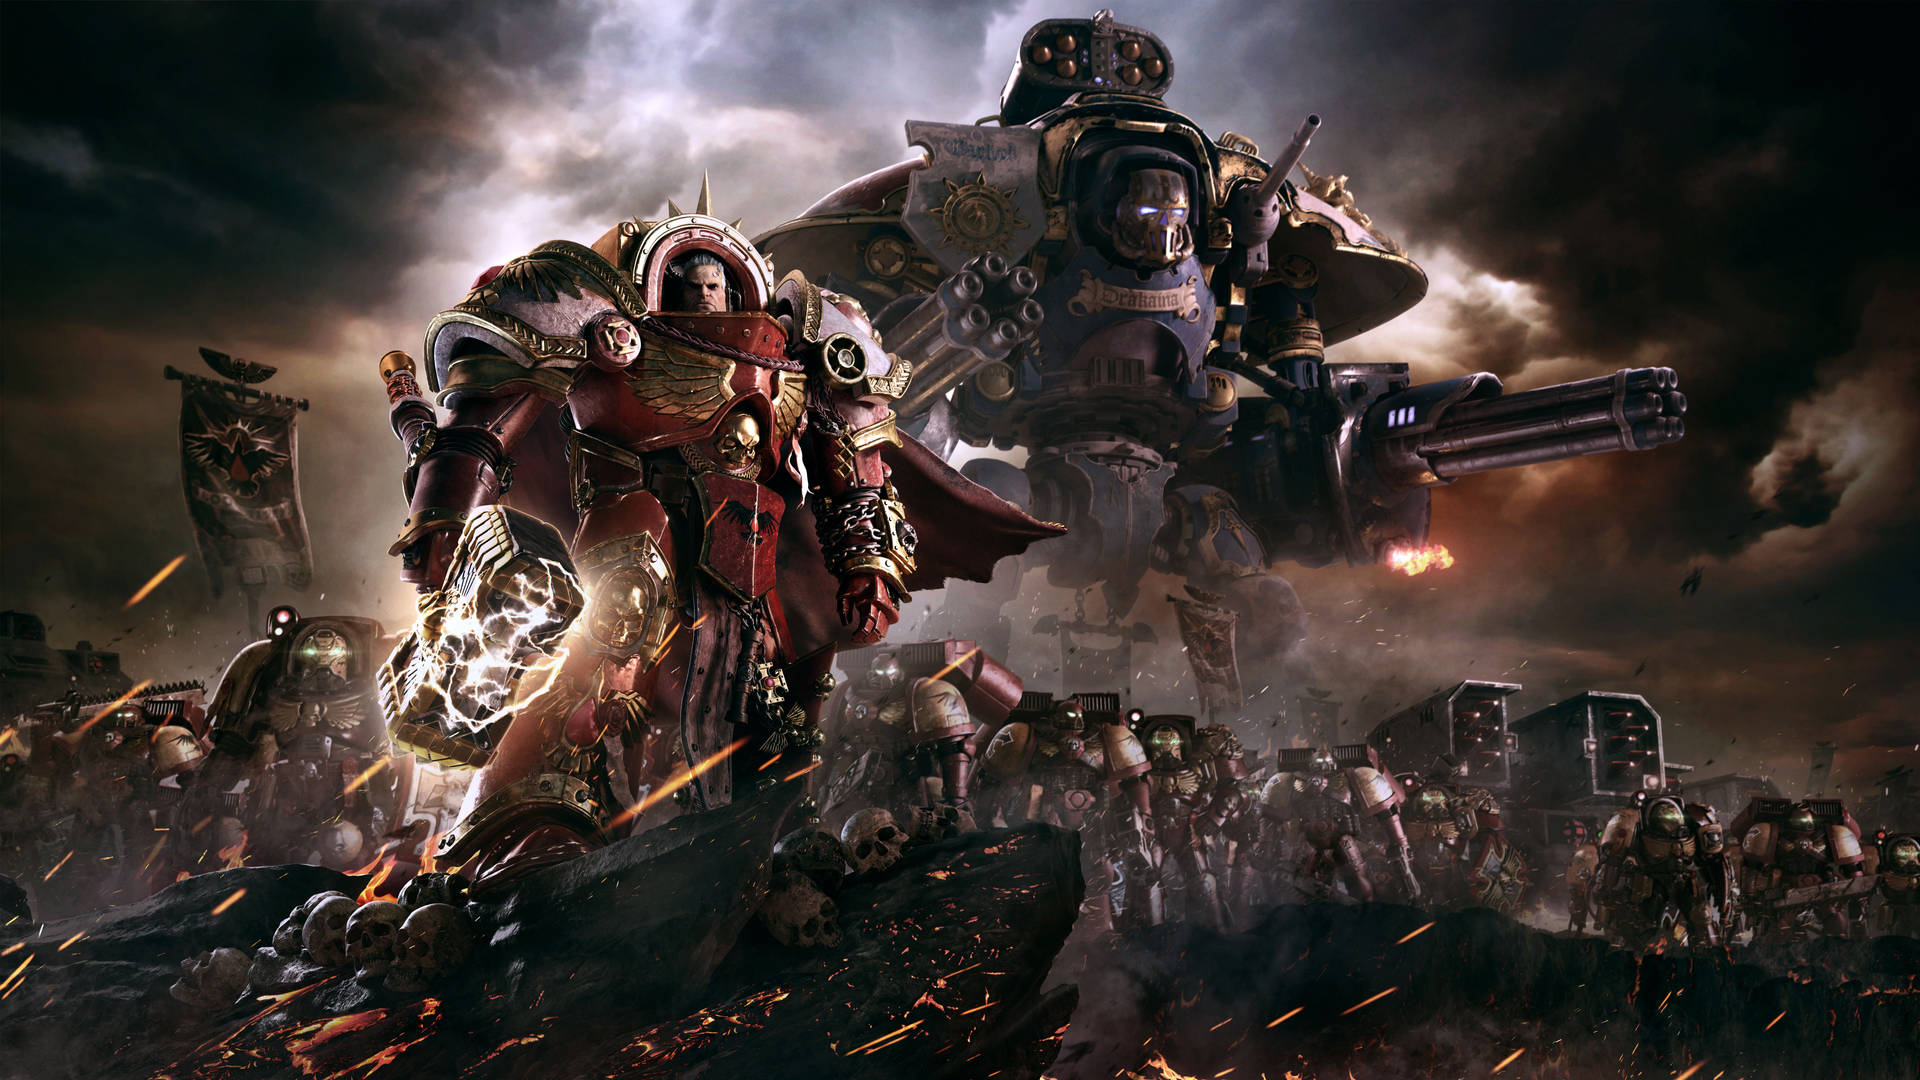 Warhammer Background Photos